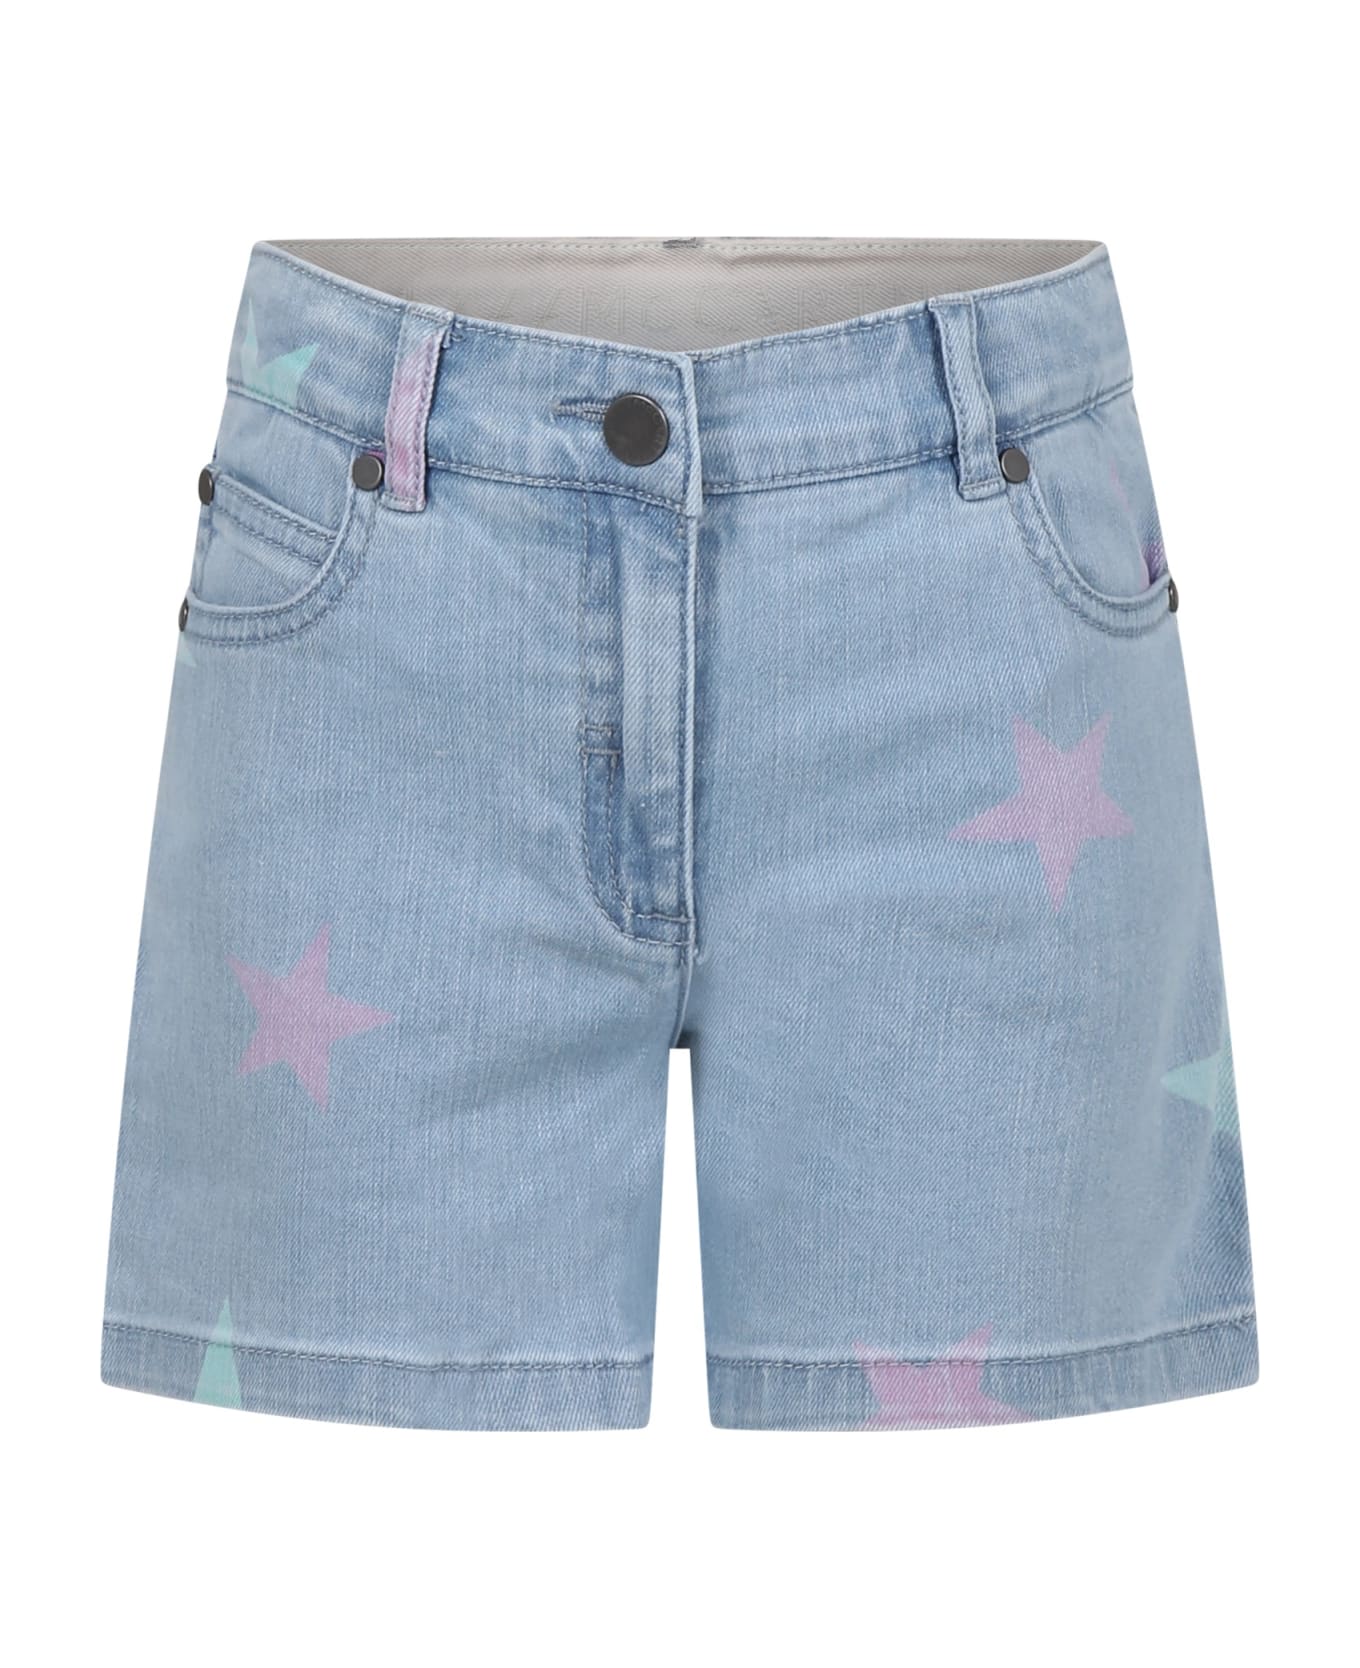 Stella McCartney Kids Denim Shorts For Girl With All-over Stars - Denim ボトムス